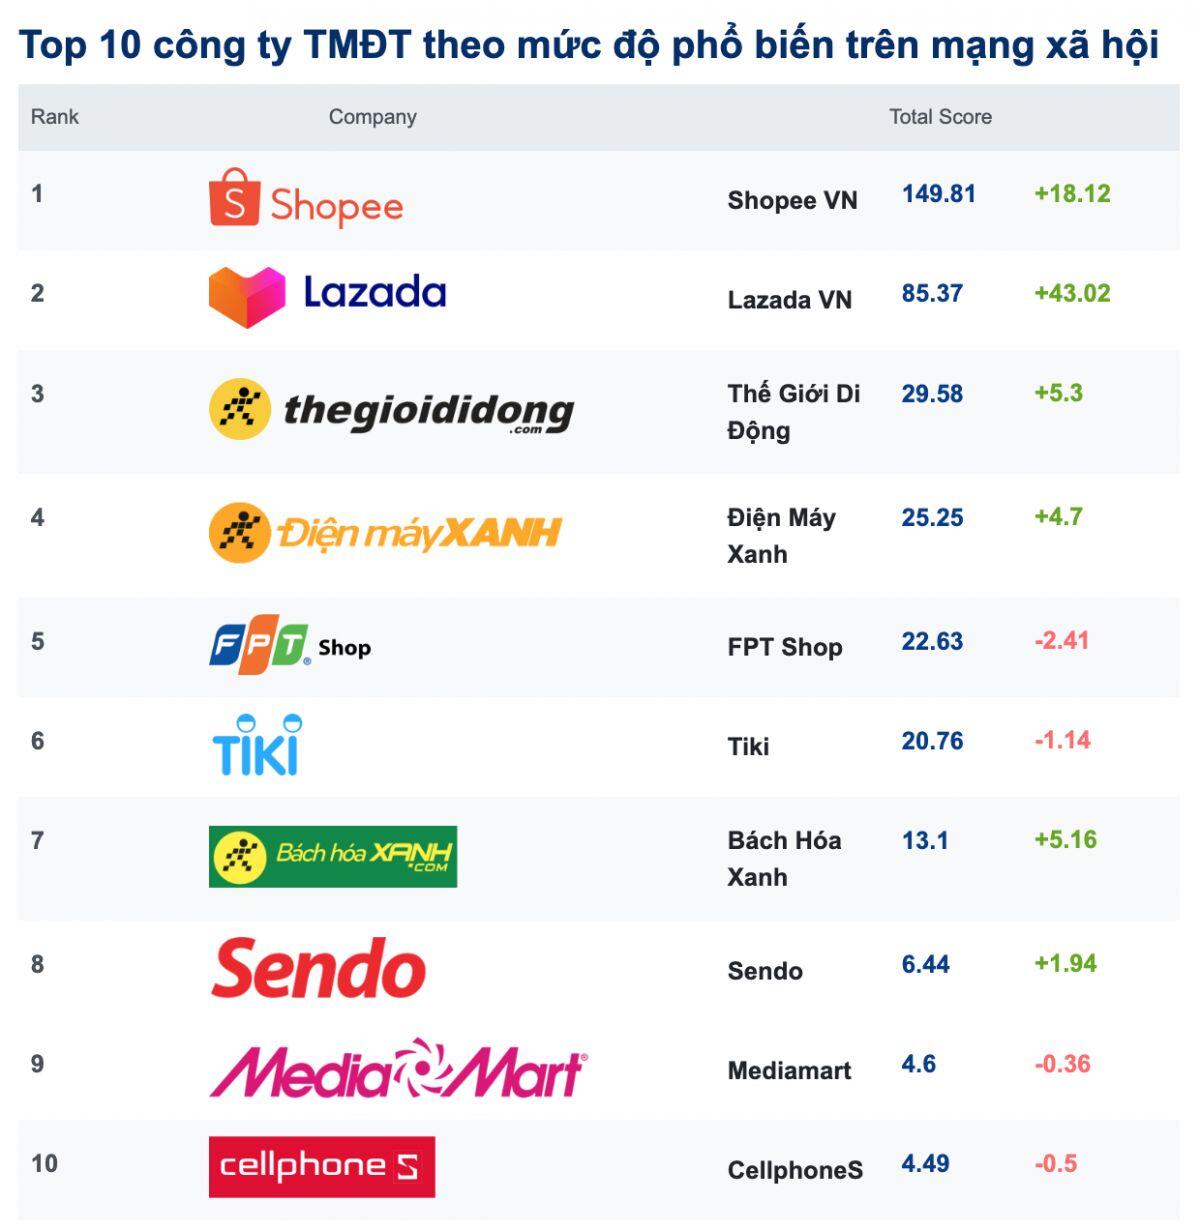 Top 10 công ty TMĐT theo mức độ phổ biến trên mạng xã hội